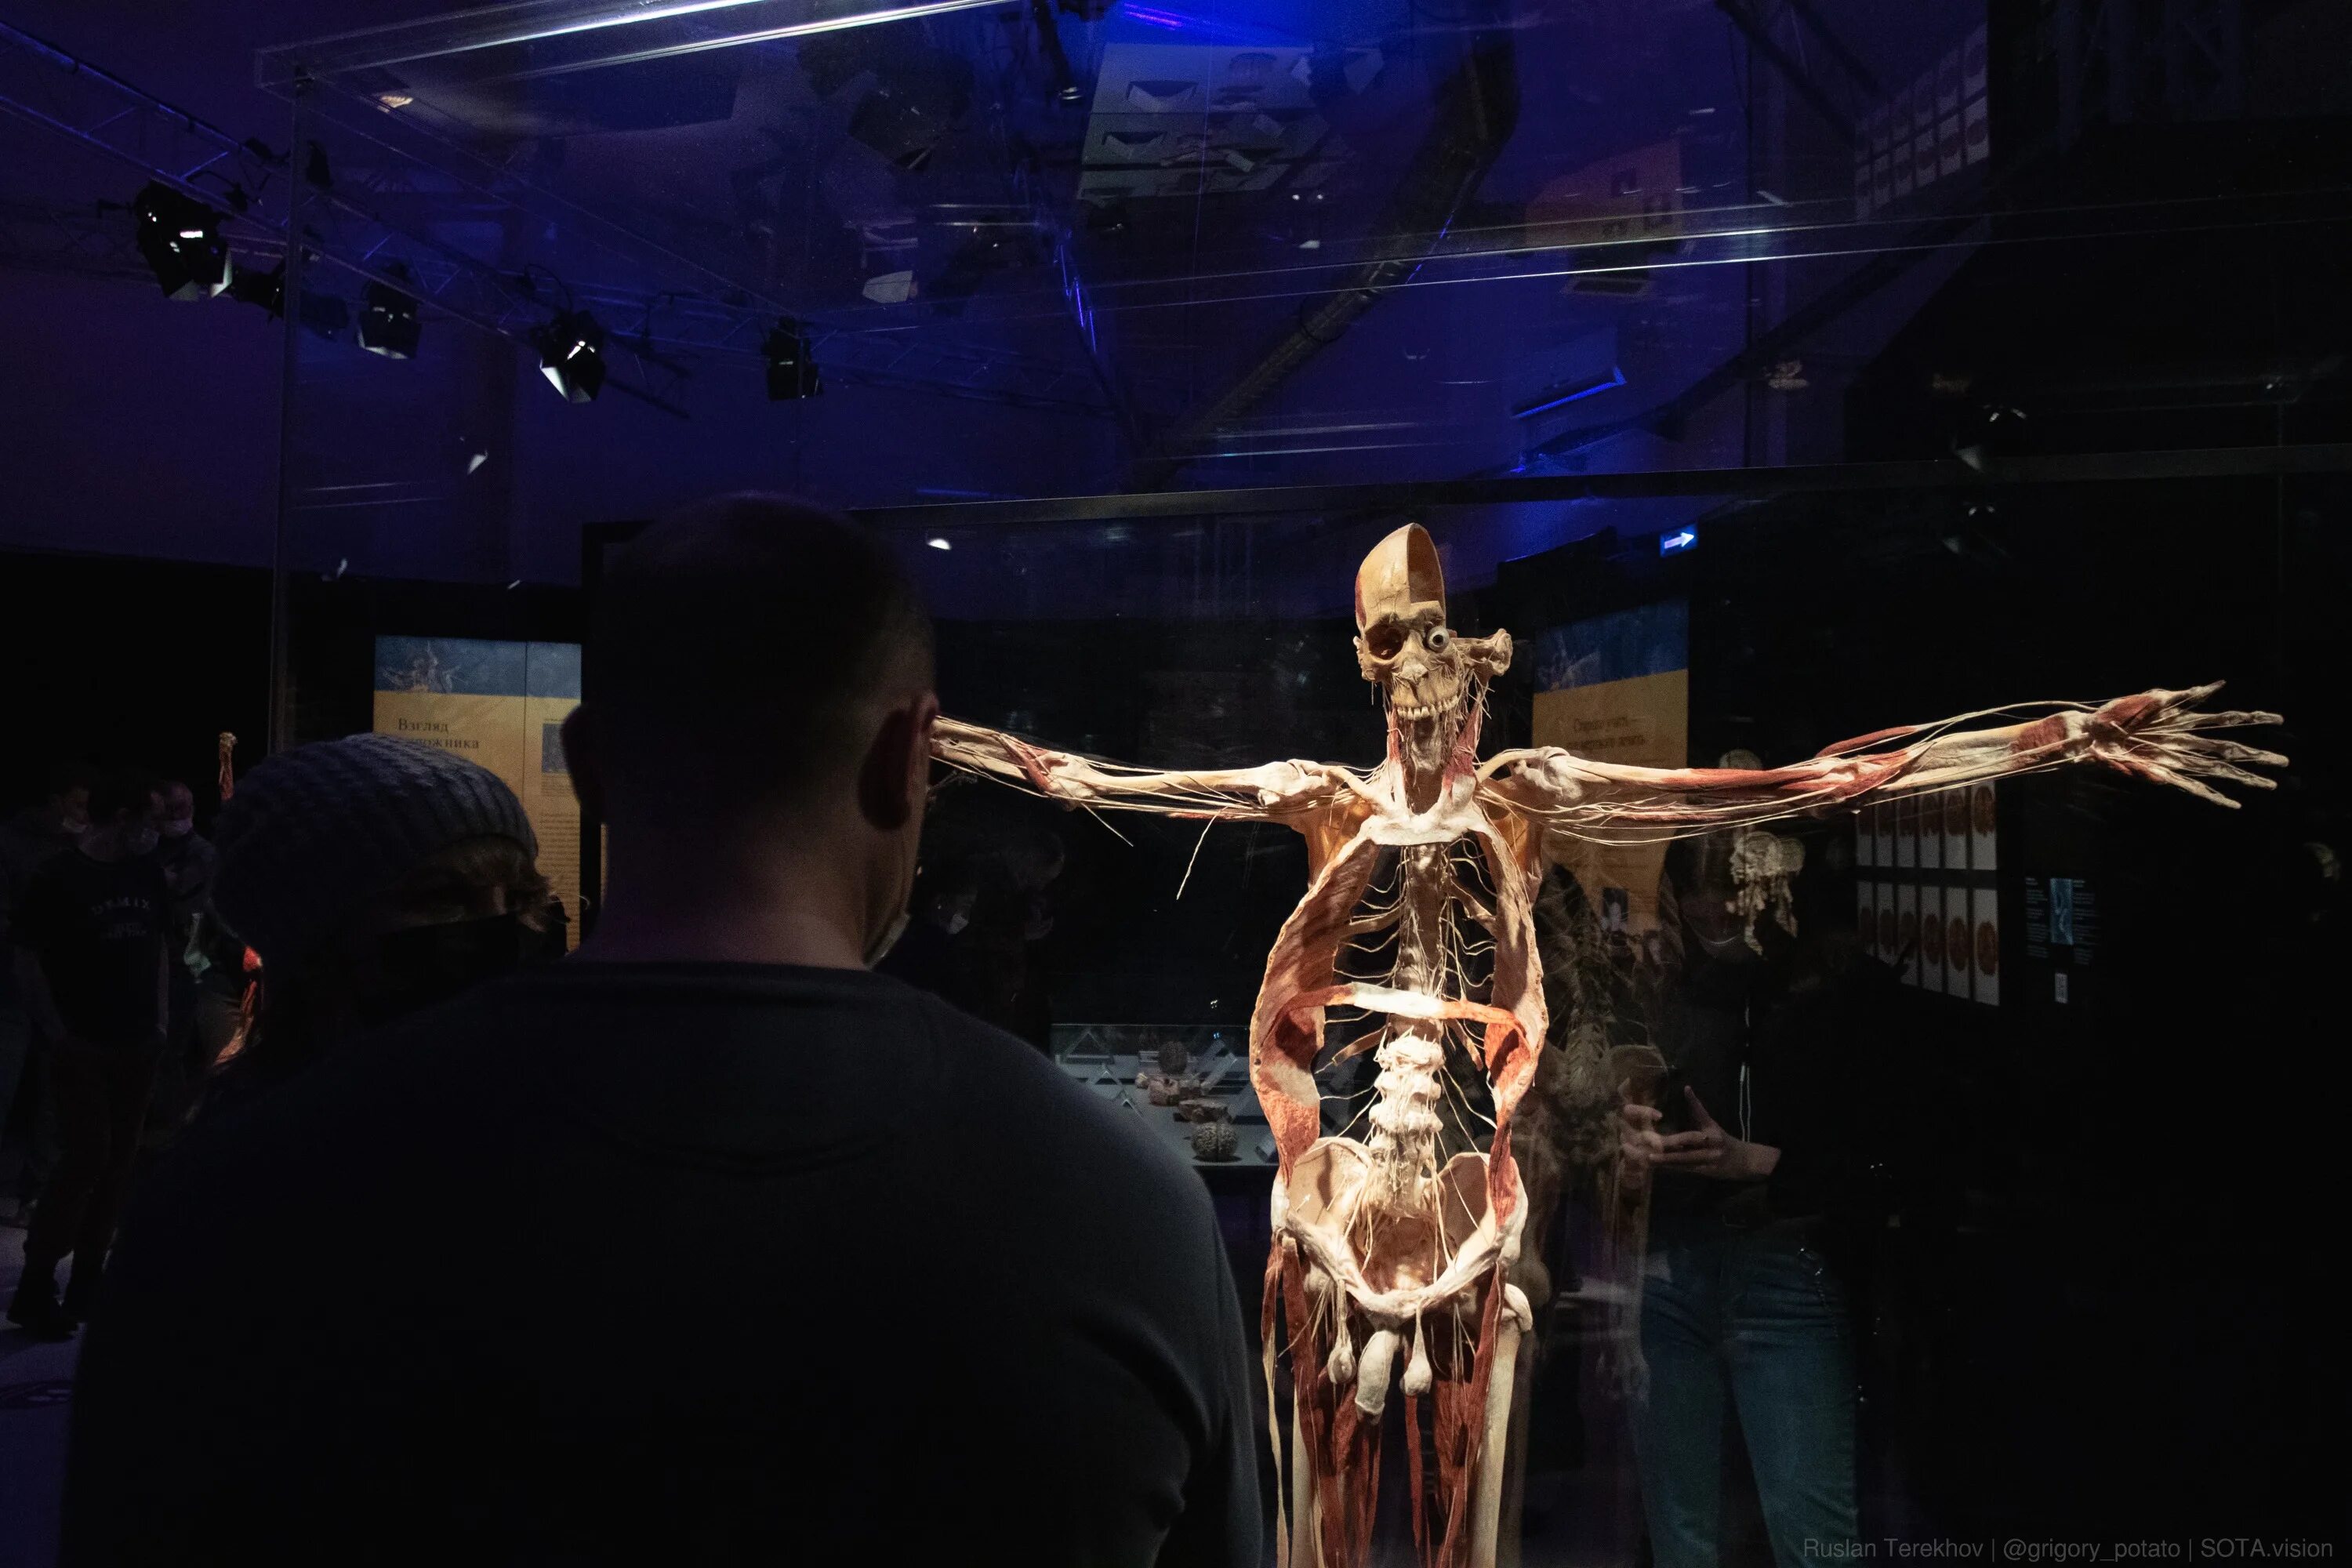 Выставочная часть. Музей пластинации Гюнтера фон Хагенса. ВДНХ анатомическая выставка Хагенса. Гюнтер фон Хагенс мир тела ВДНХ.